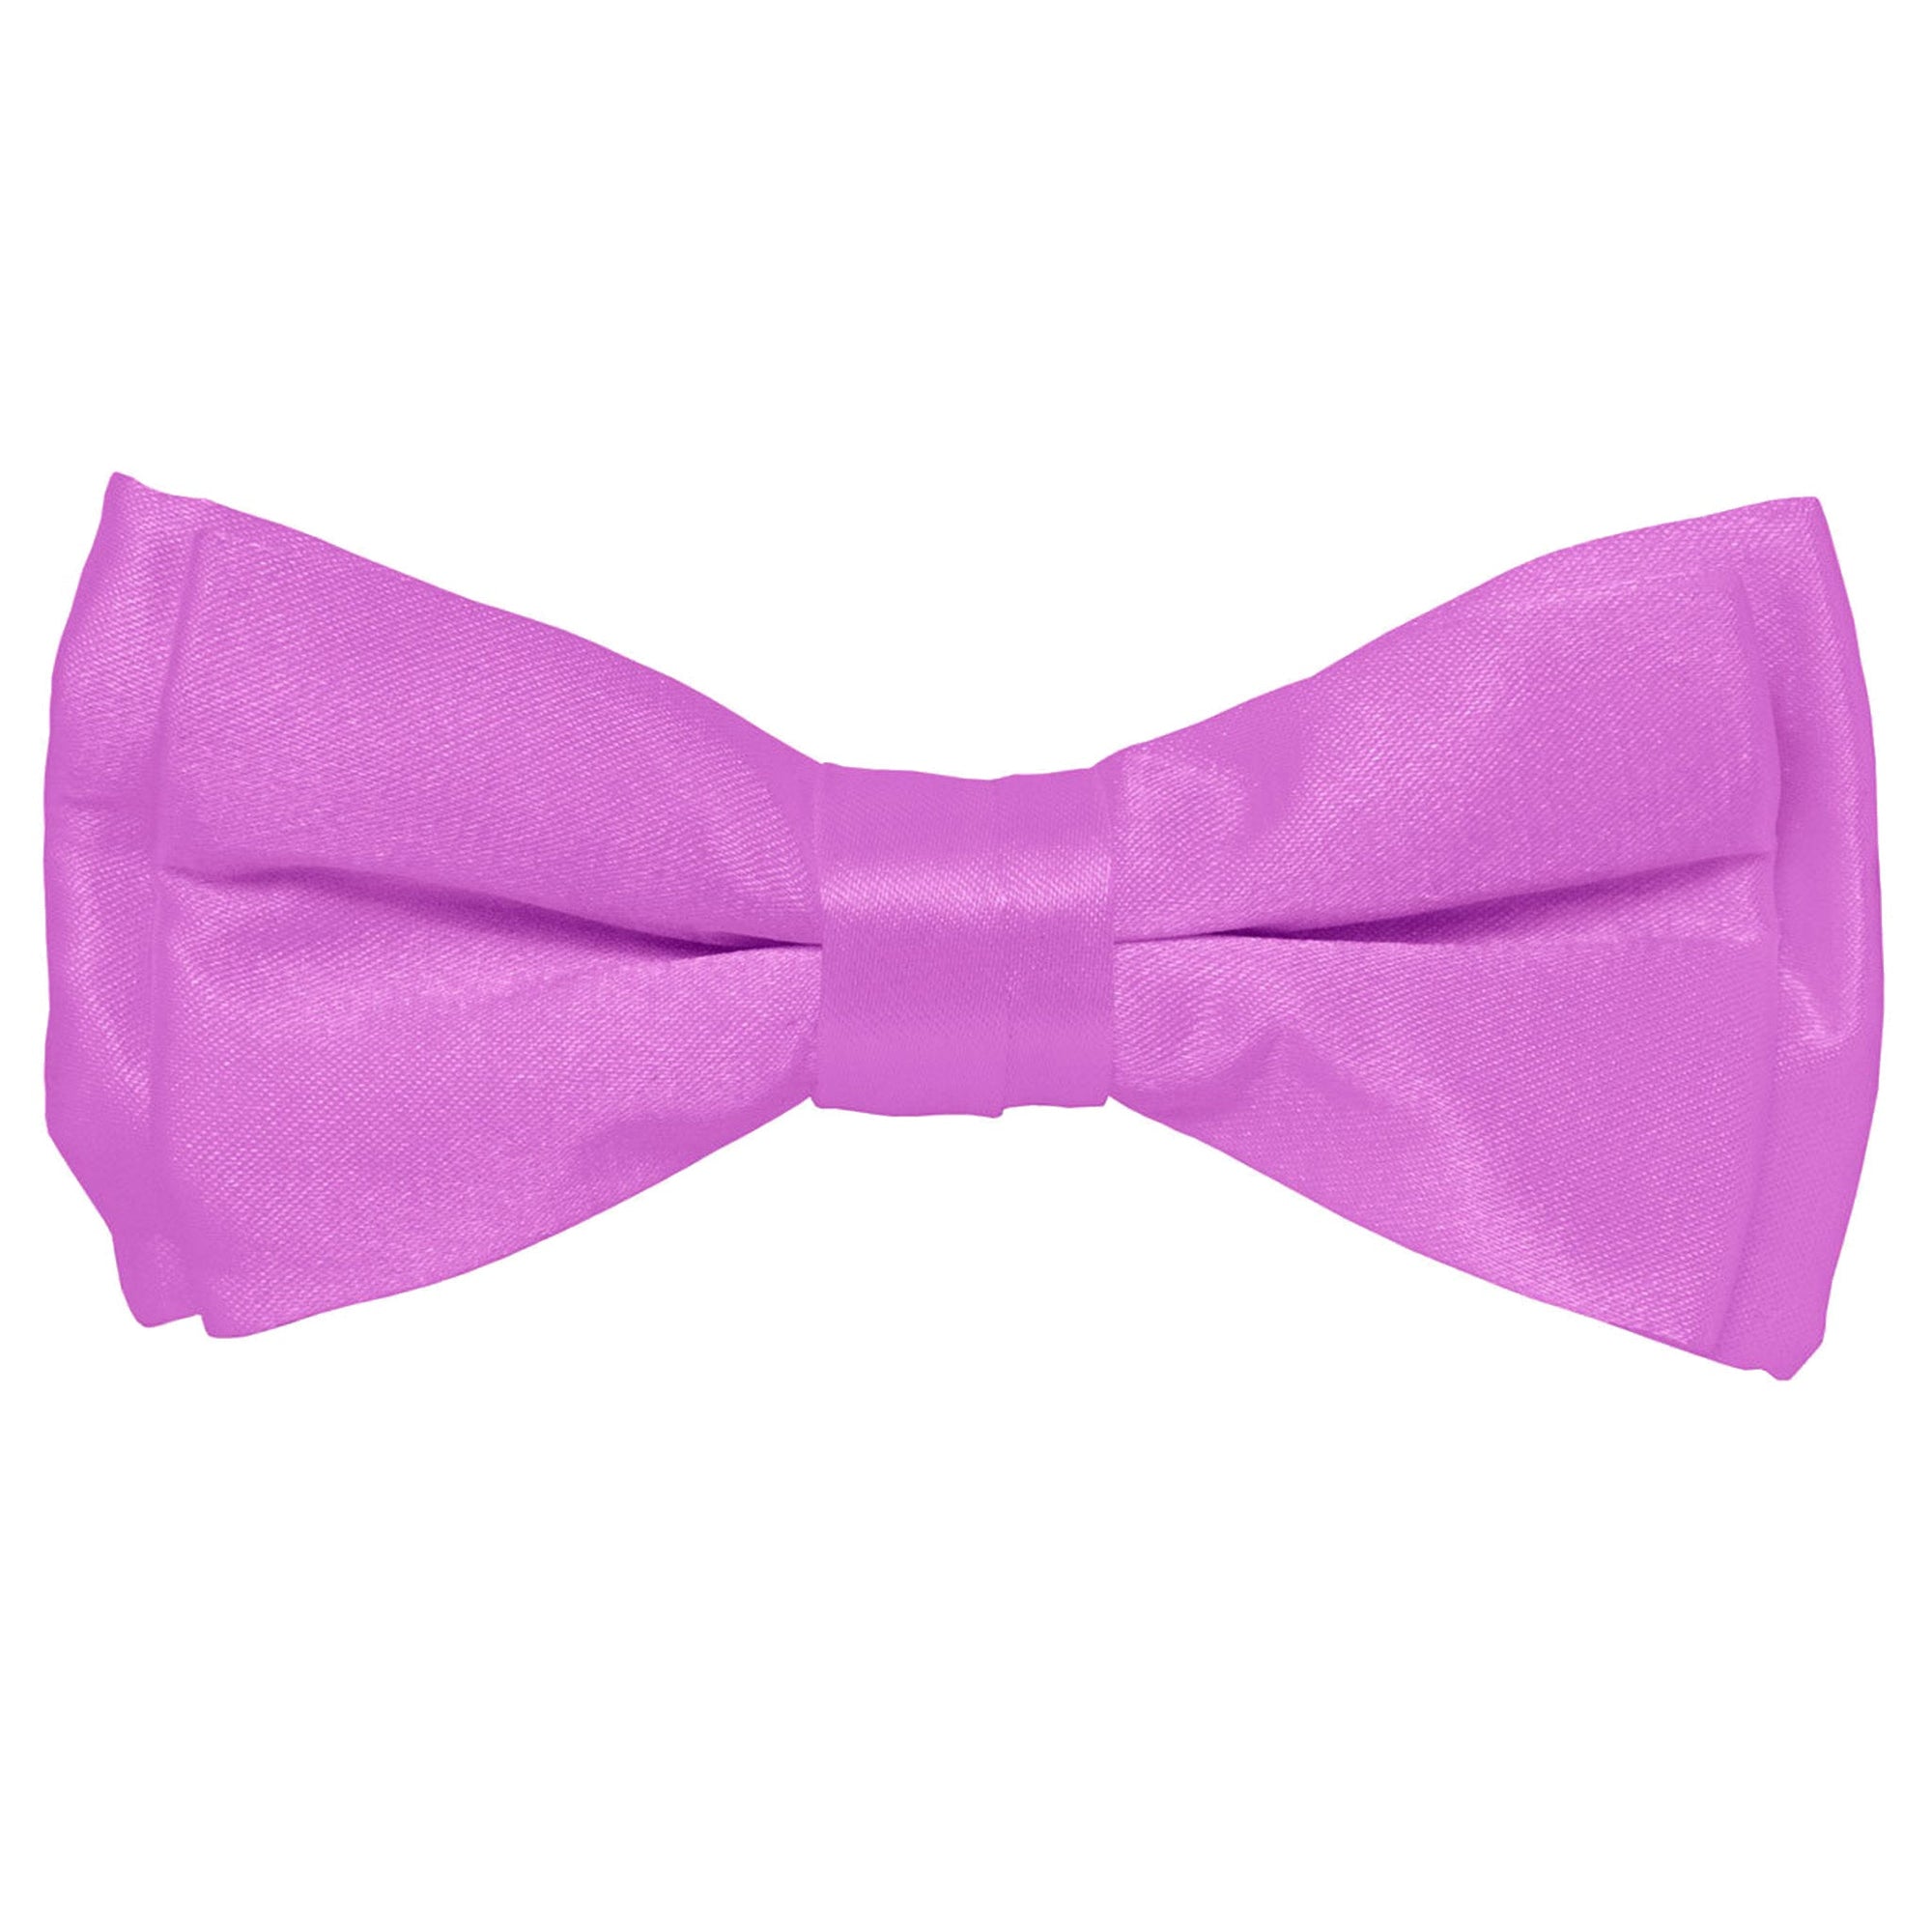 Vittorio Farina Boy's Solid Silky Bow Tie by Classy Cufflinks - boys-lavender - Classy Cufflinks